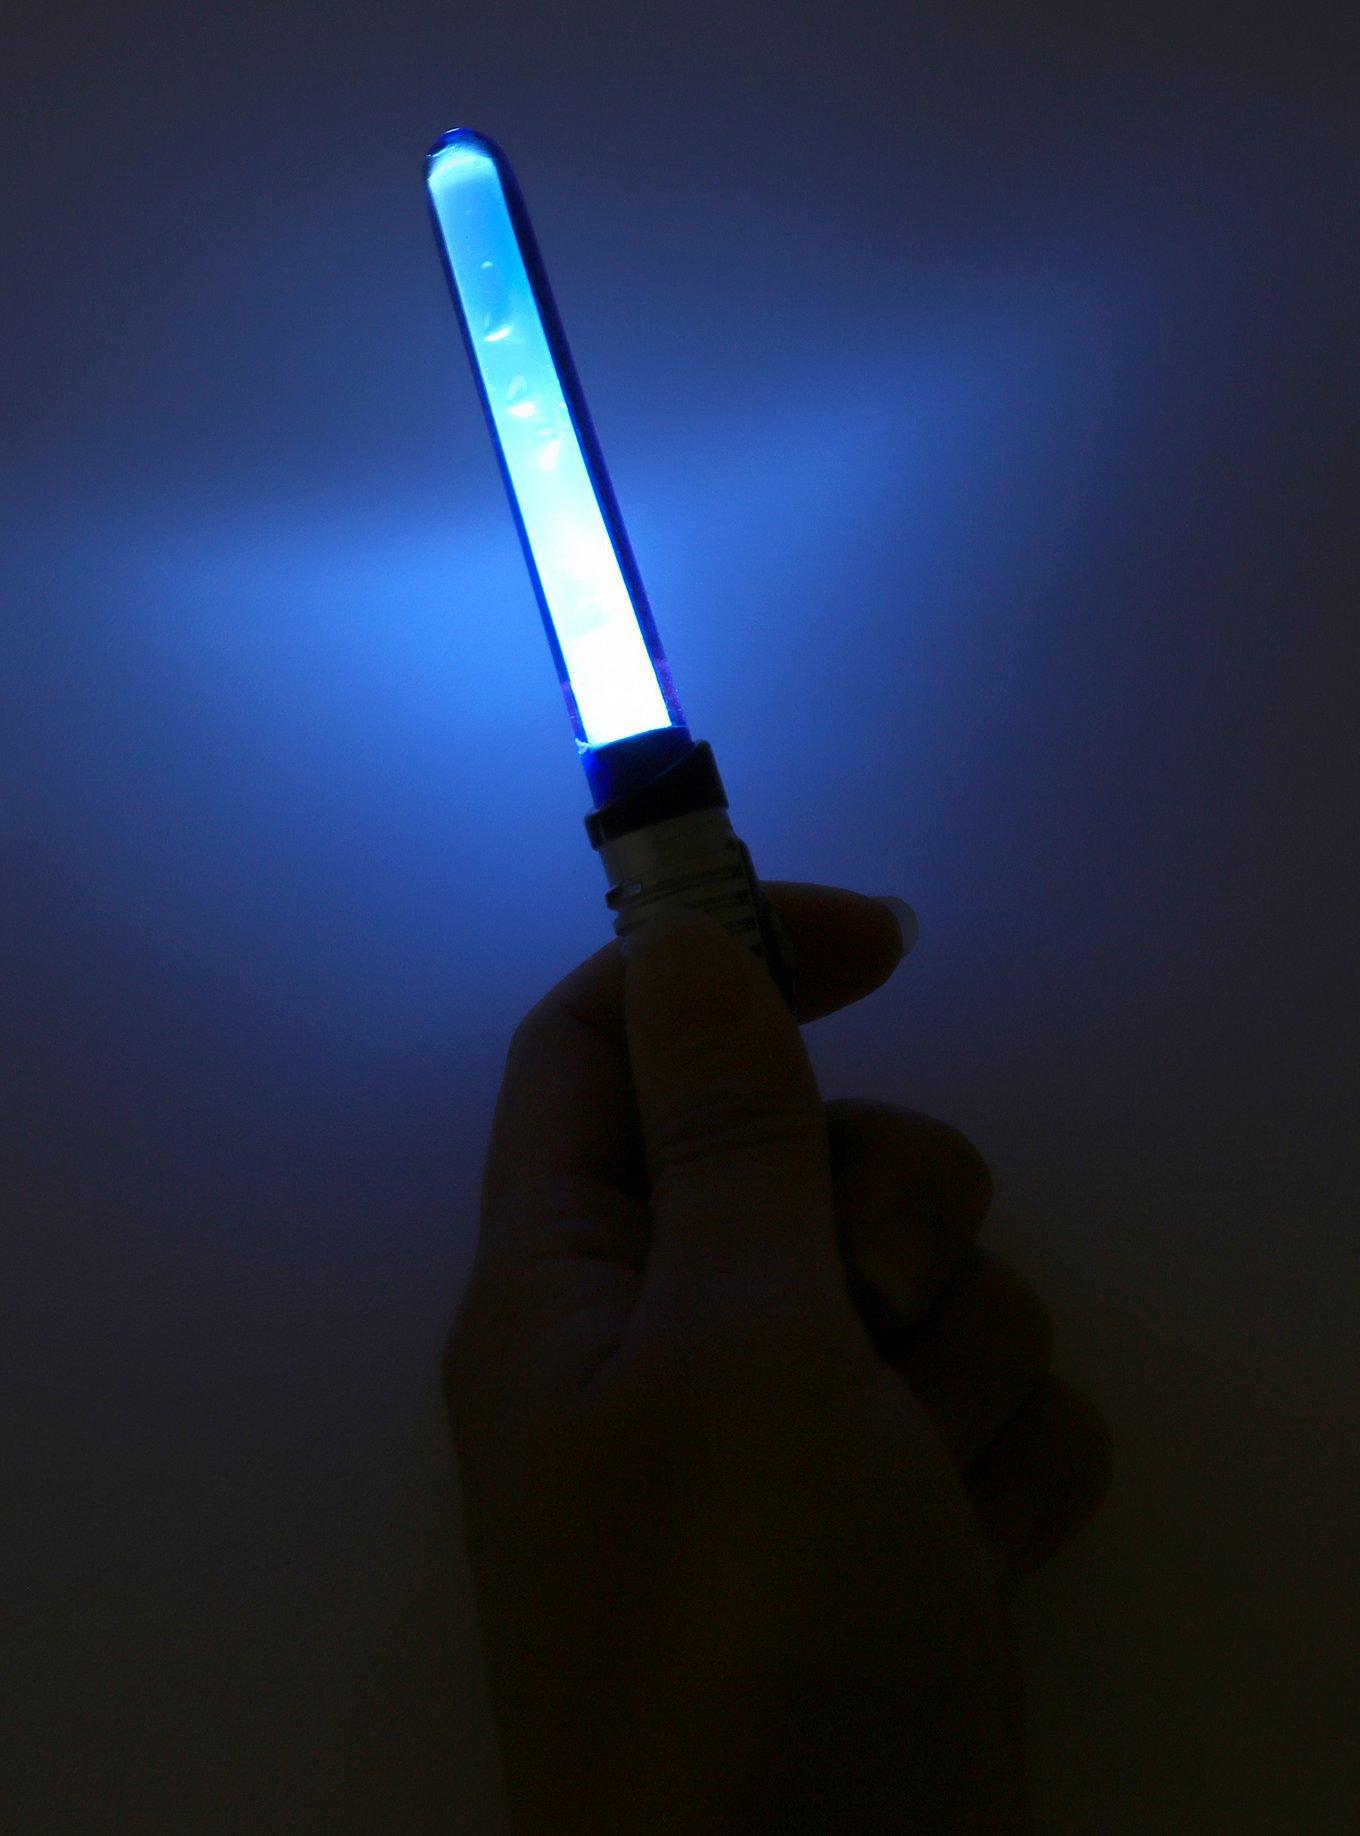 Star Wars Luke Skywalker Lightsaber Pen, , alternate